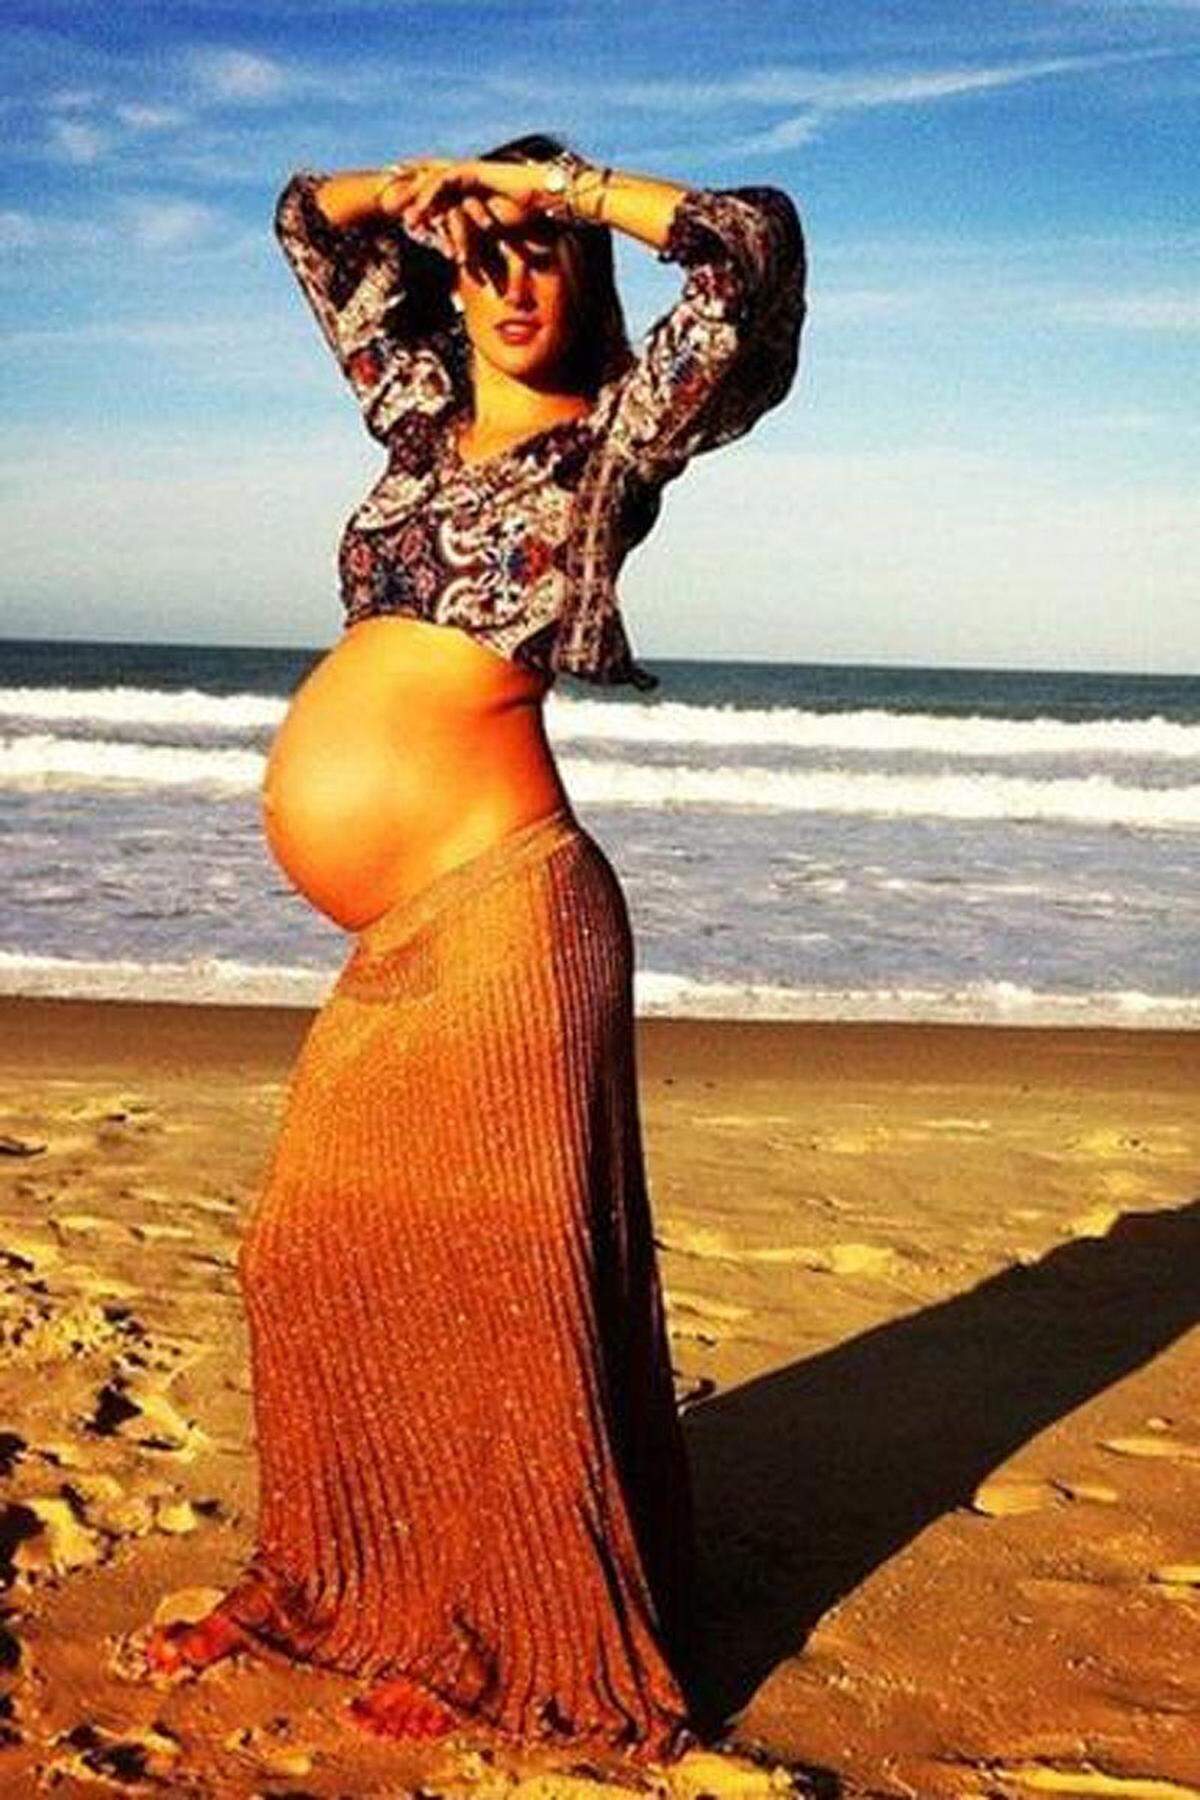 Der brasilianische Engel Alessandra Ambrosio brachte ihr zweites Kind zur Welt. Kurz vor der Niederkunft posierte sie noch am Strand.